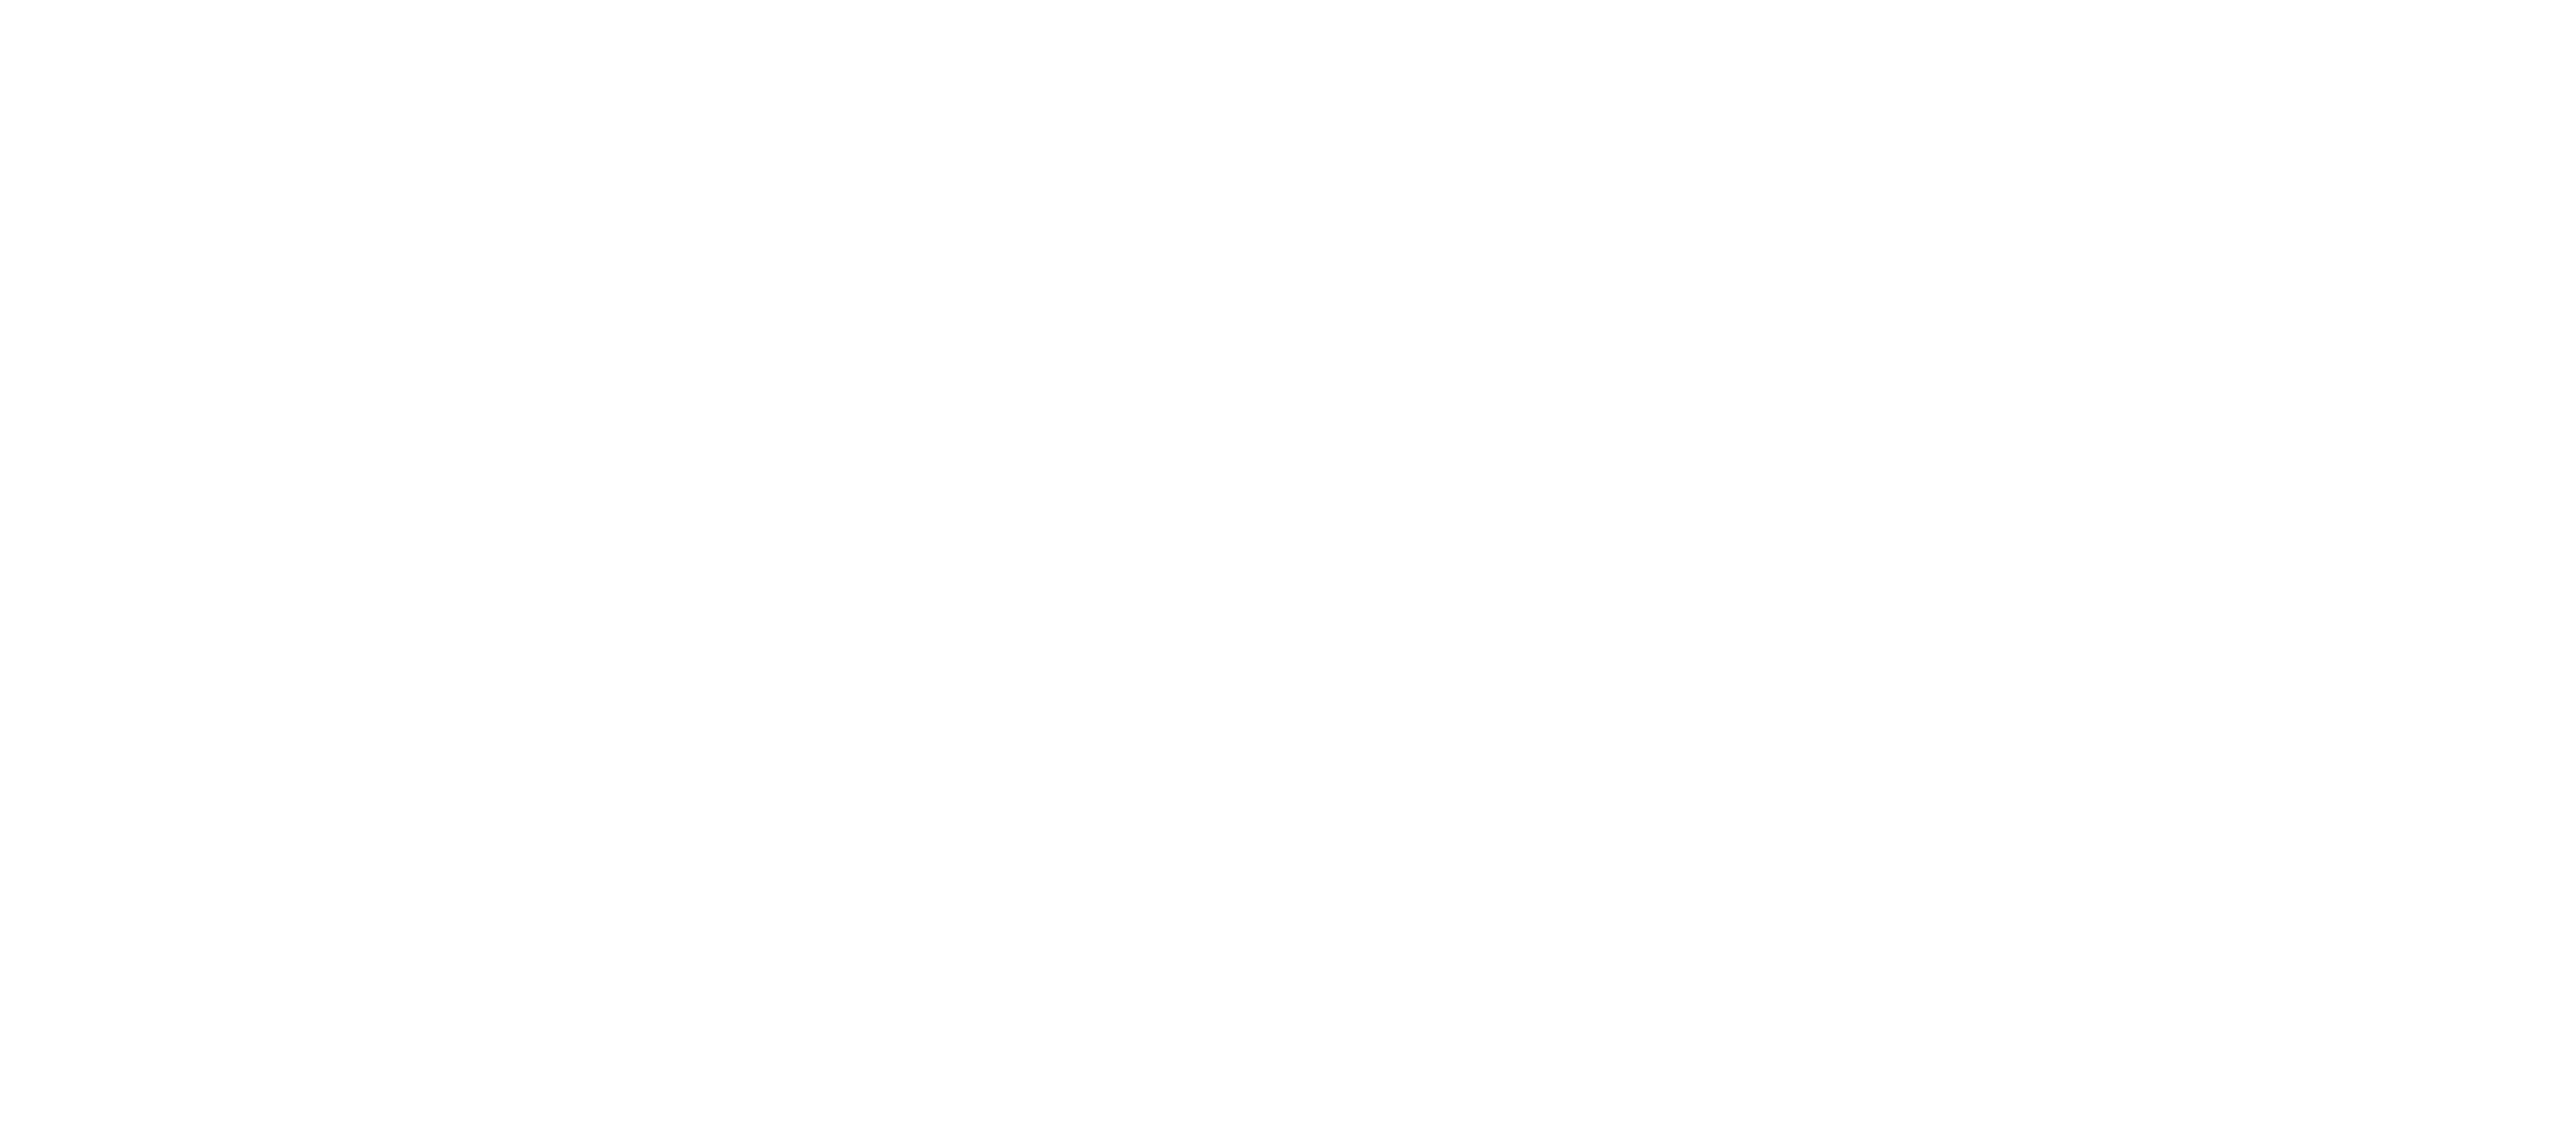 I-SEC Nederland BV logo